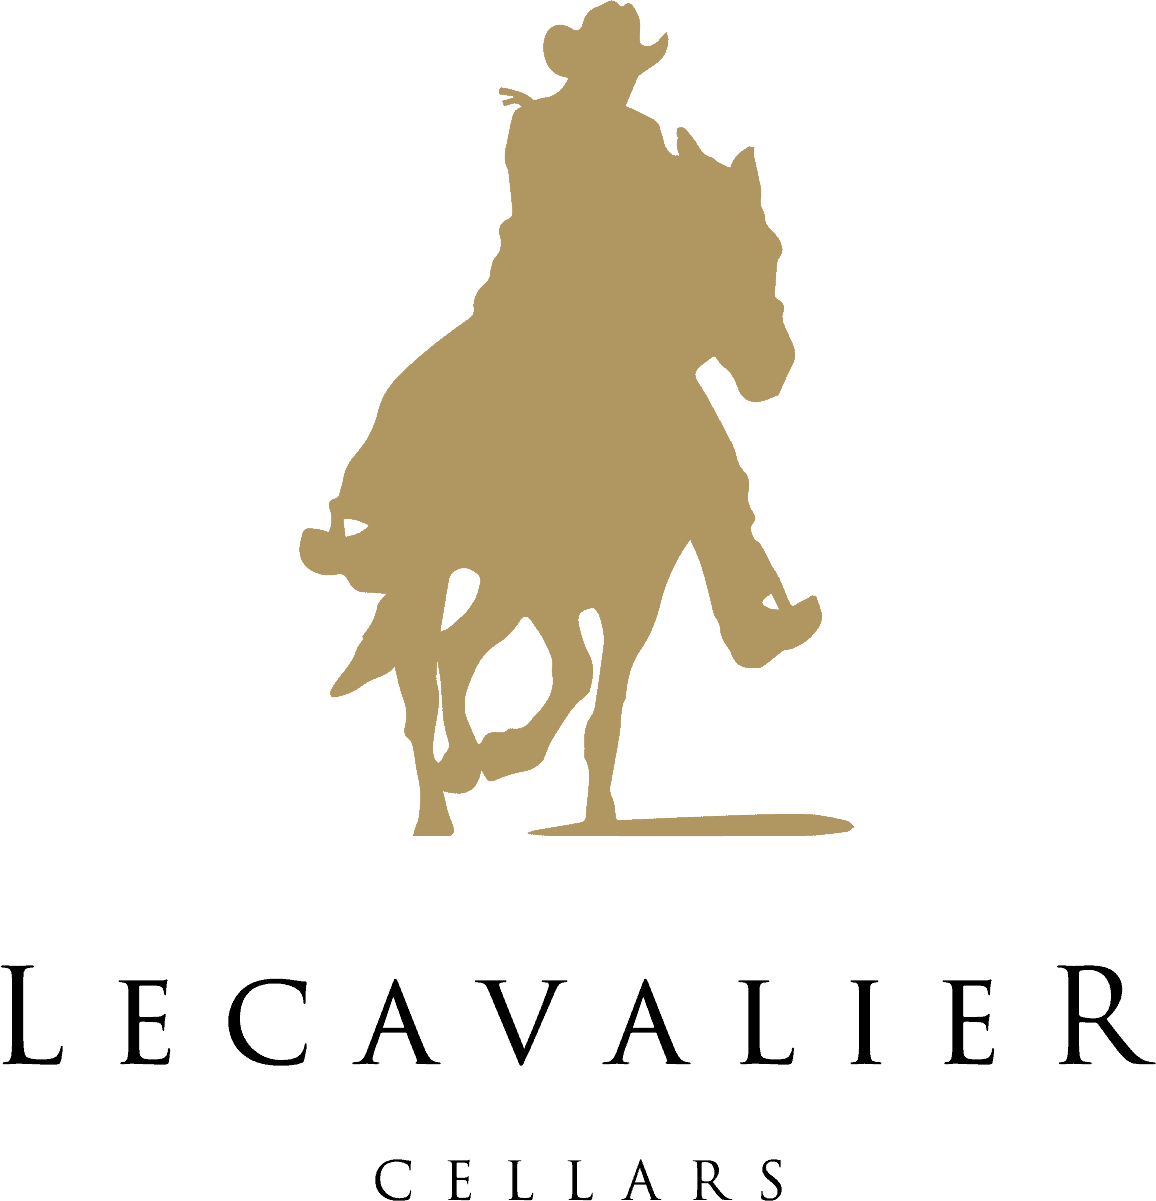 Member Welcome: Lecavalier Cellars